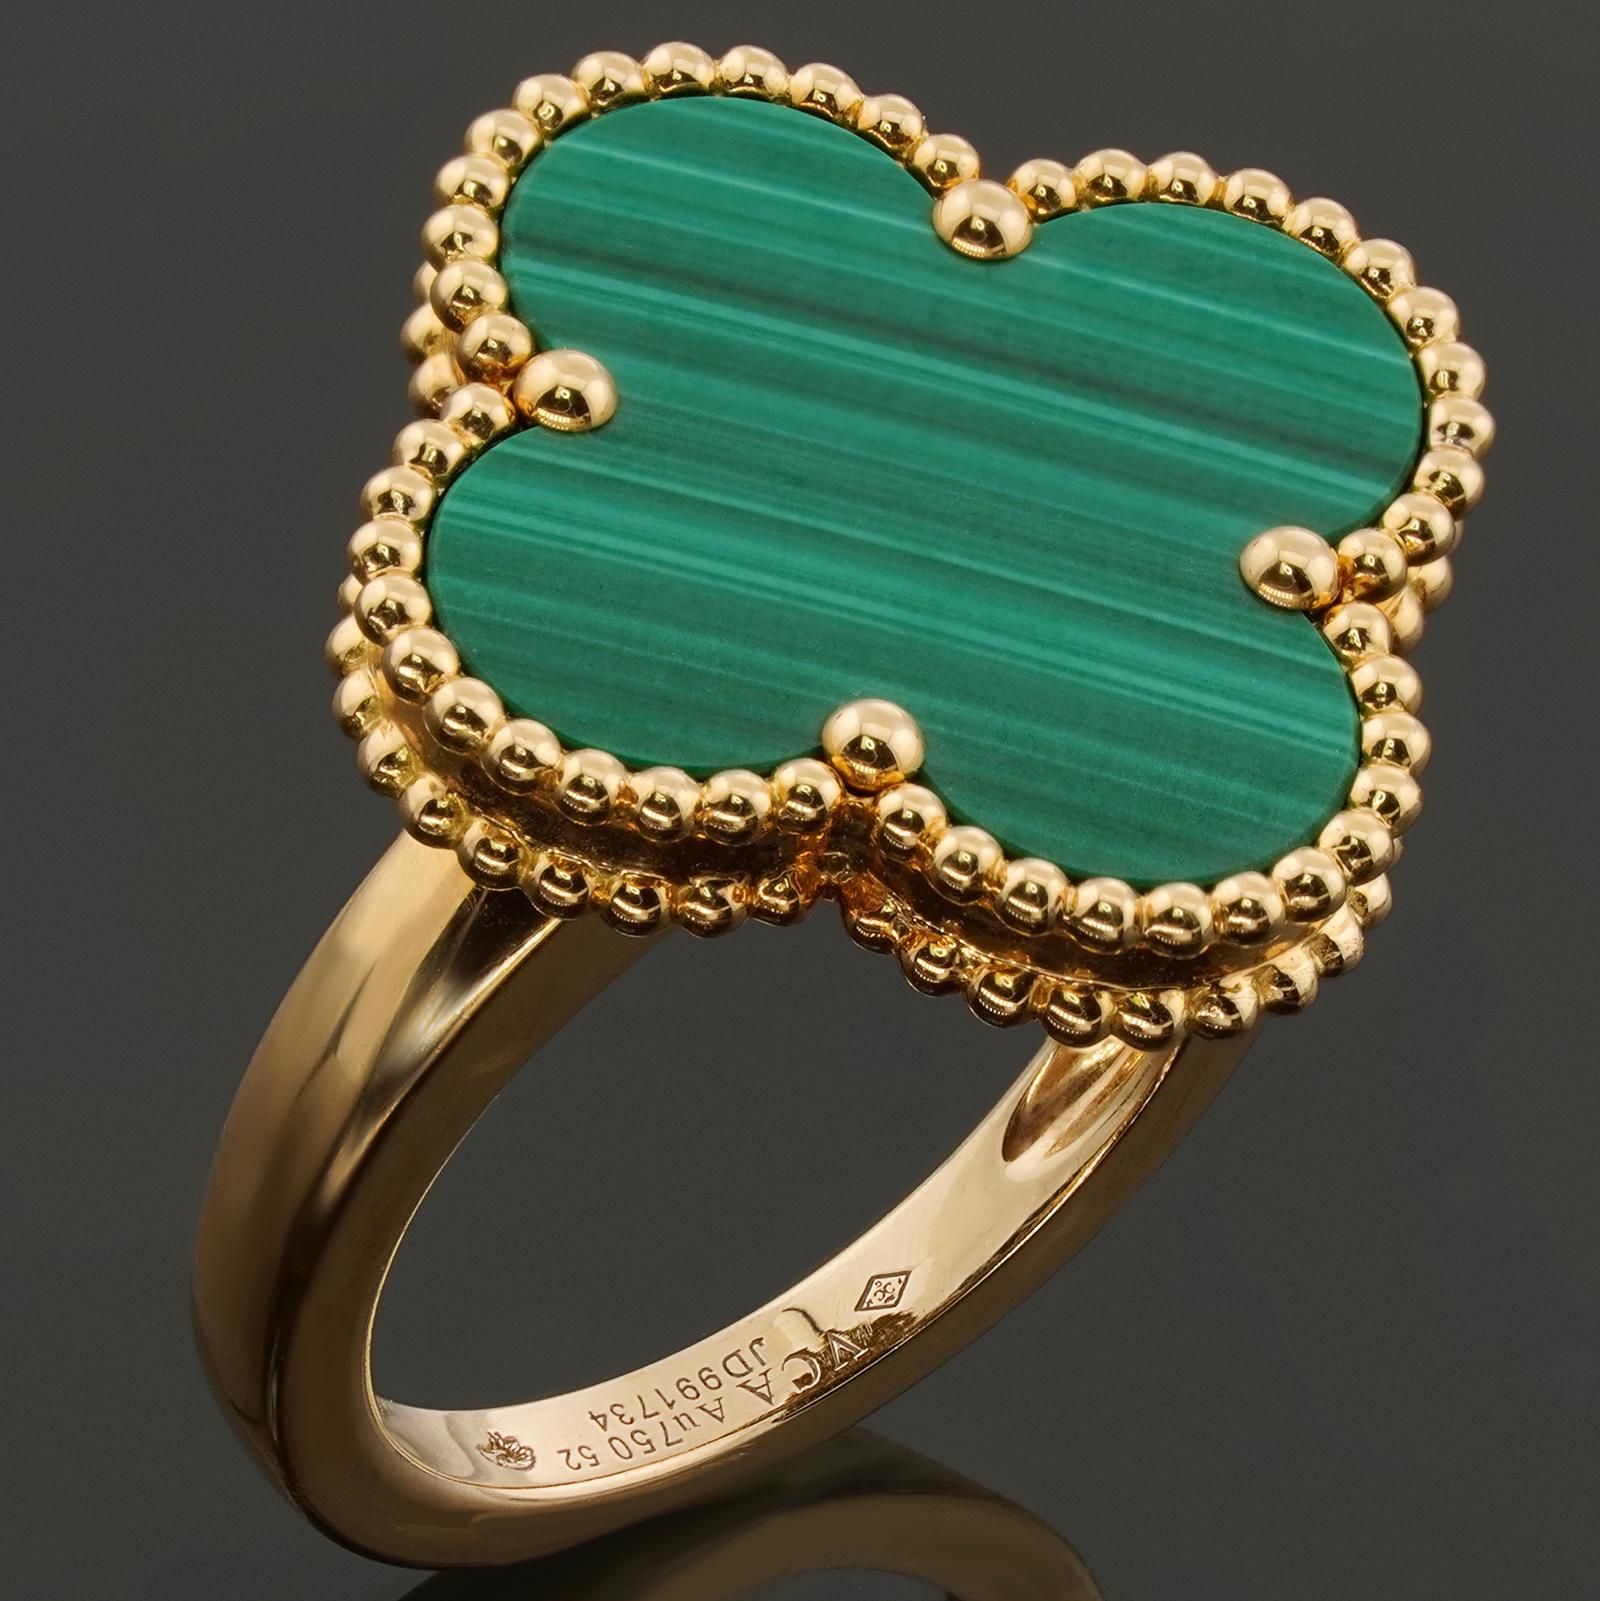 Dieser fabelhafte Ring von Van Cleef & Arpels aus der ikonischen Magic Alhambra Kollektion zeichnet sich durch das klassische, mit Perlen umrandete Glücksklee-Design aus, das in 18 Karat Gelbgold gefertigt und mit grünem Malachit eingelegt ist.